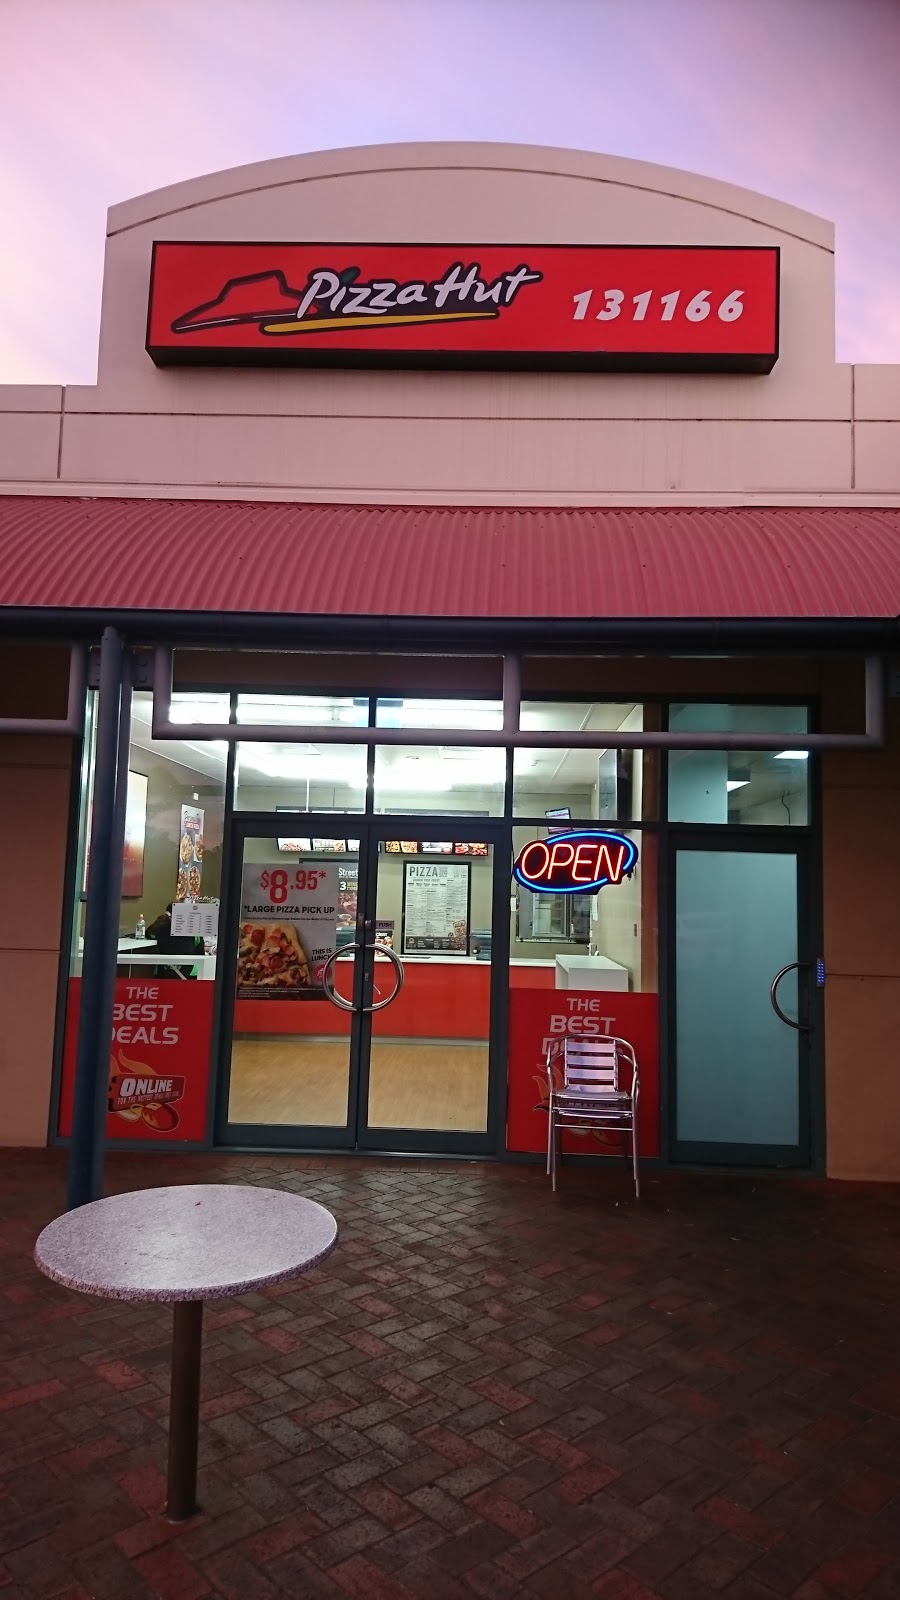 Pizza Hut Munno Para | meal delivery | Shop 2 Munno Para Shopping Centre, Munno Para, Adelaide SA 5113, Australia | 131166 OR +61 131166